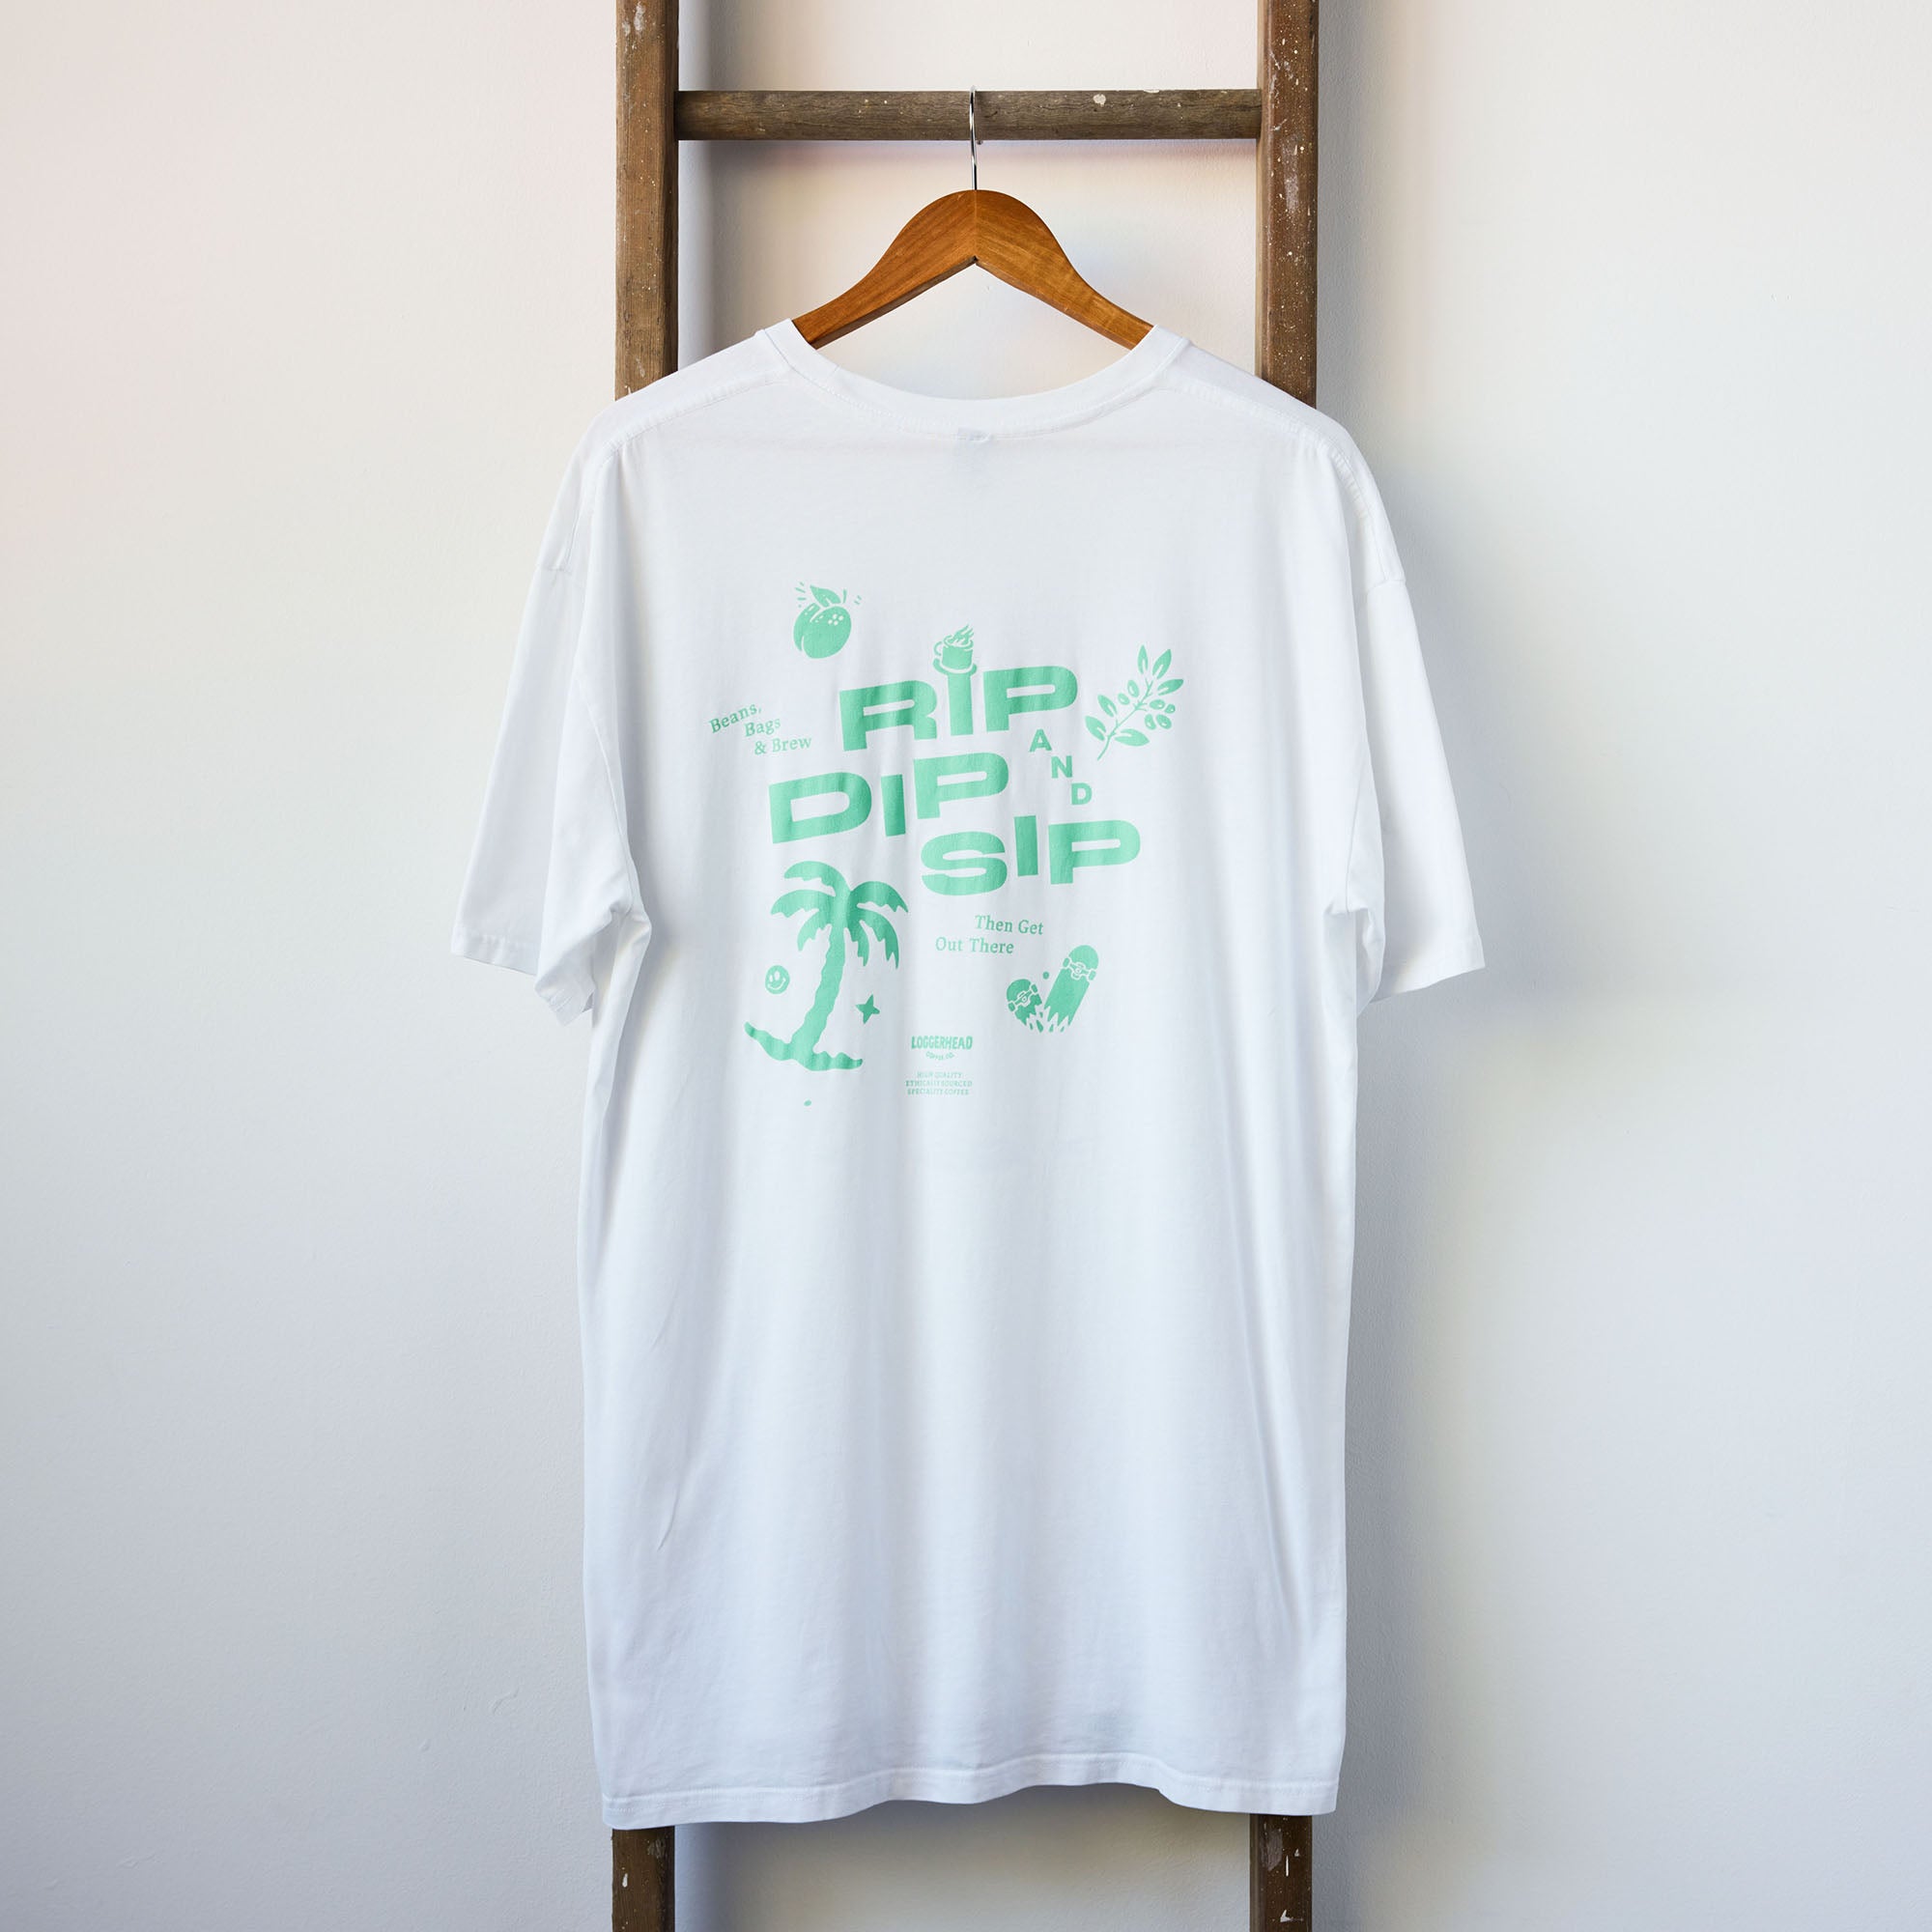 'RIP, DIP N SIP' | White T-Shirt